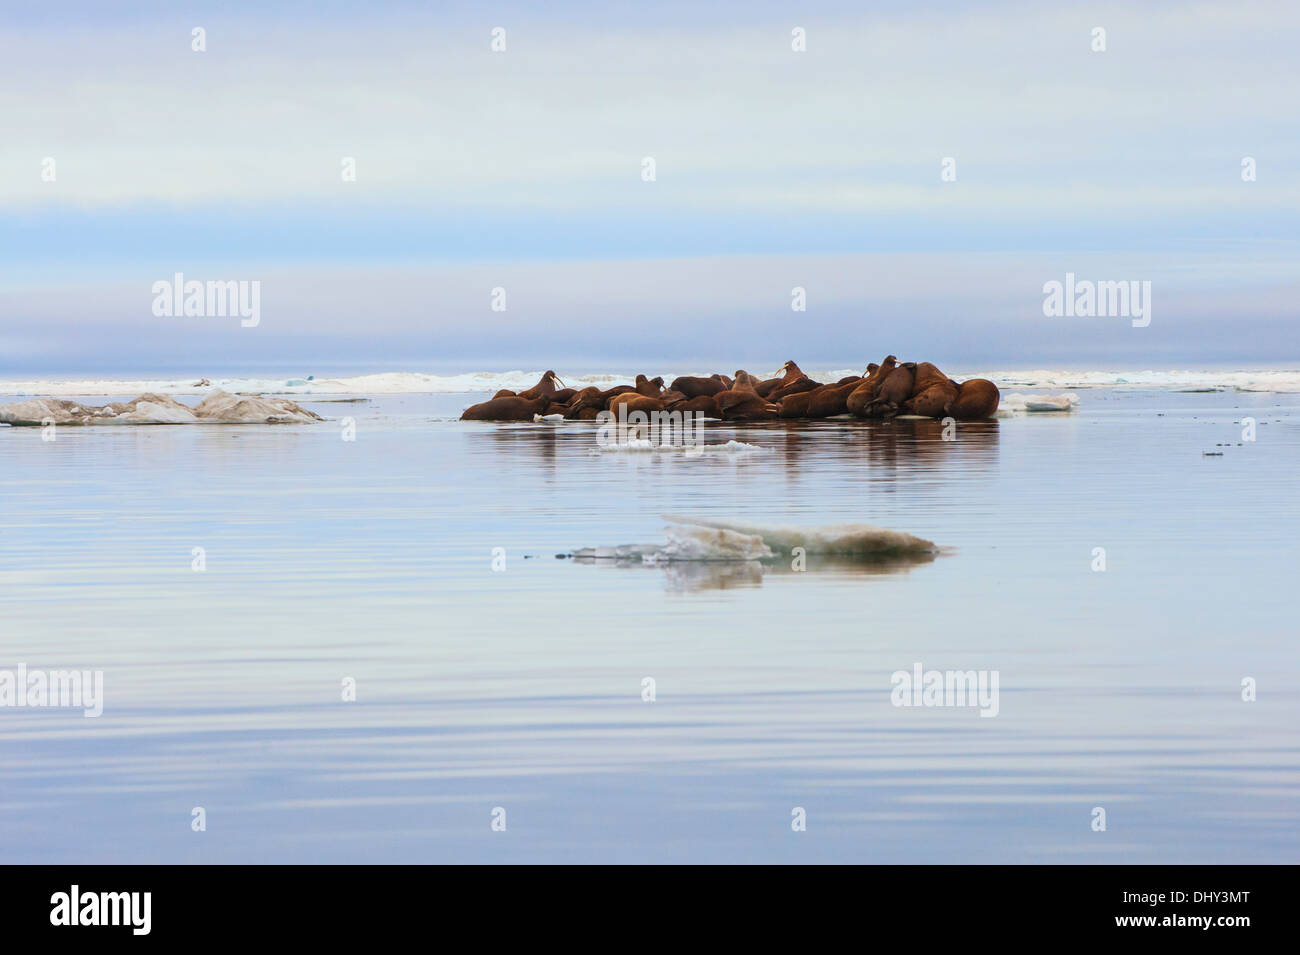 Groupe de morse (Odobenus rosmarus) reposant sur un flux de glace, Tchoukotka, Extrême-Orient russe Banque D'Images